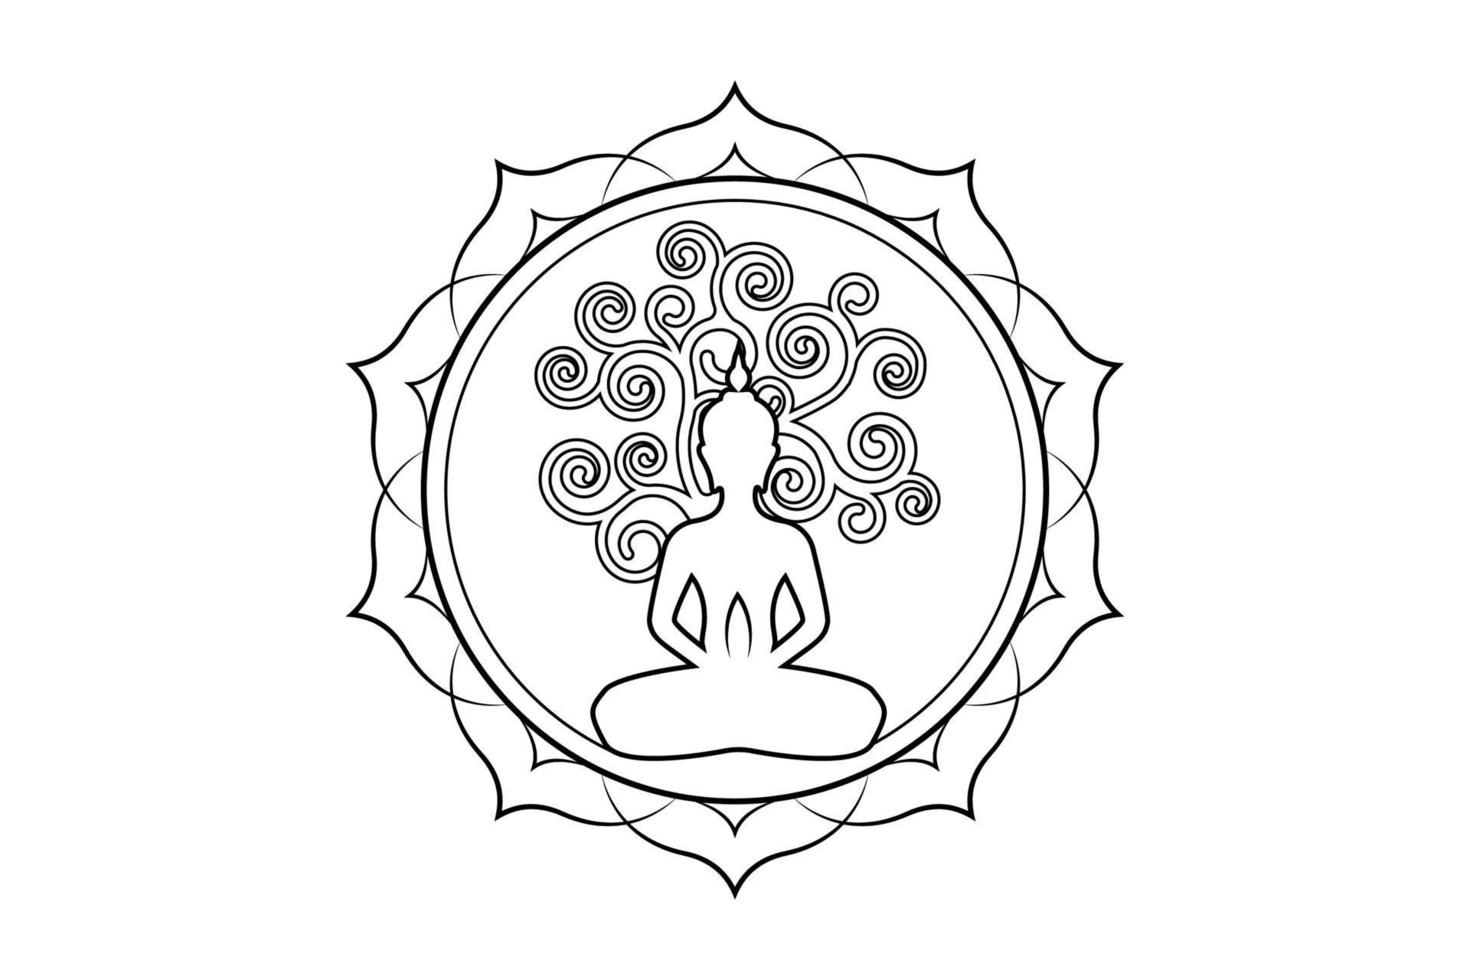 día de visakha puja, estatua de buda y árbol bodhi en plantilla de logotipo de loto sagrado. árbol sagrado, ficus religiosa, concepto de árbol de la vida. vector aislado sobre fondo blanco